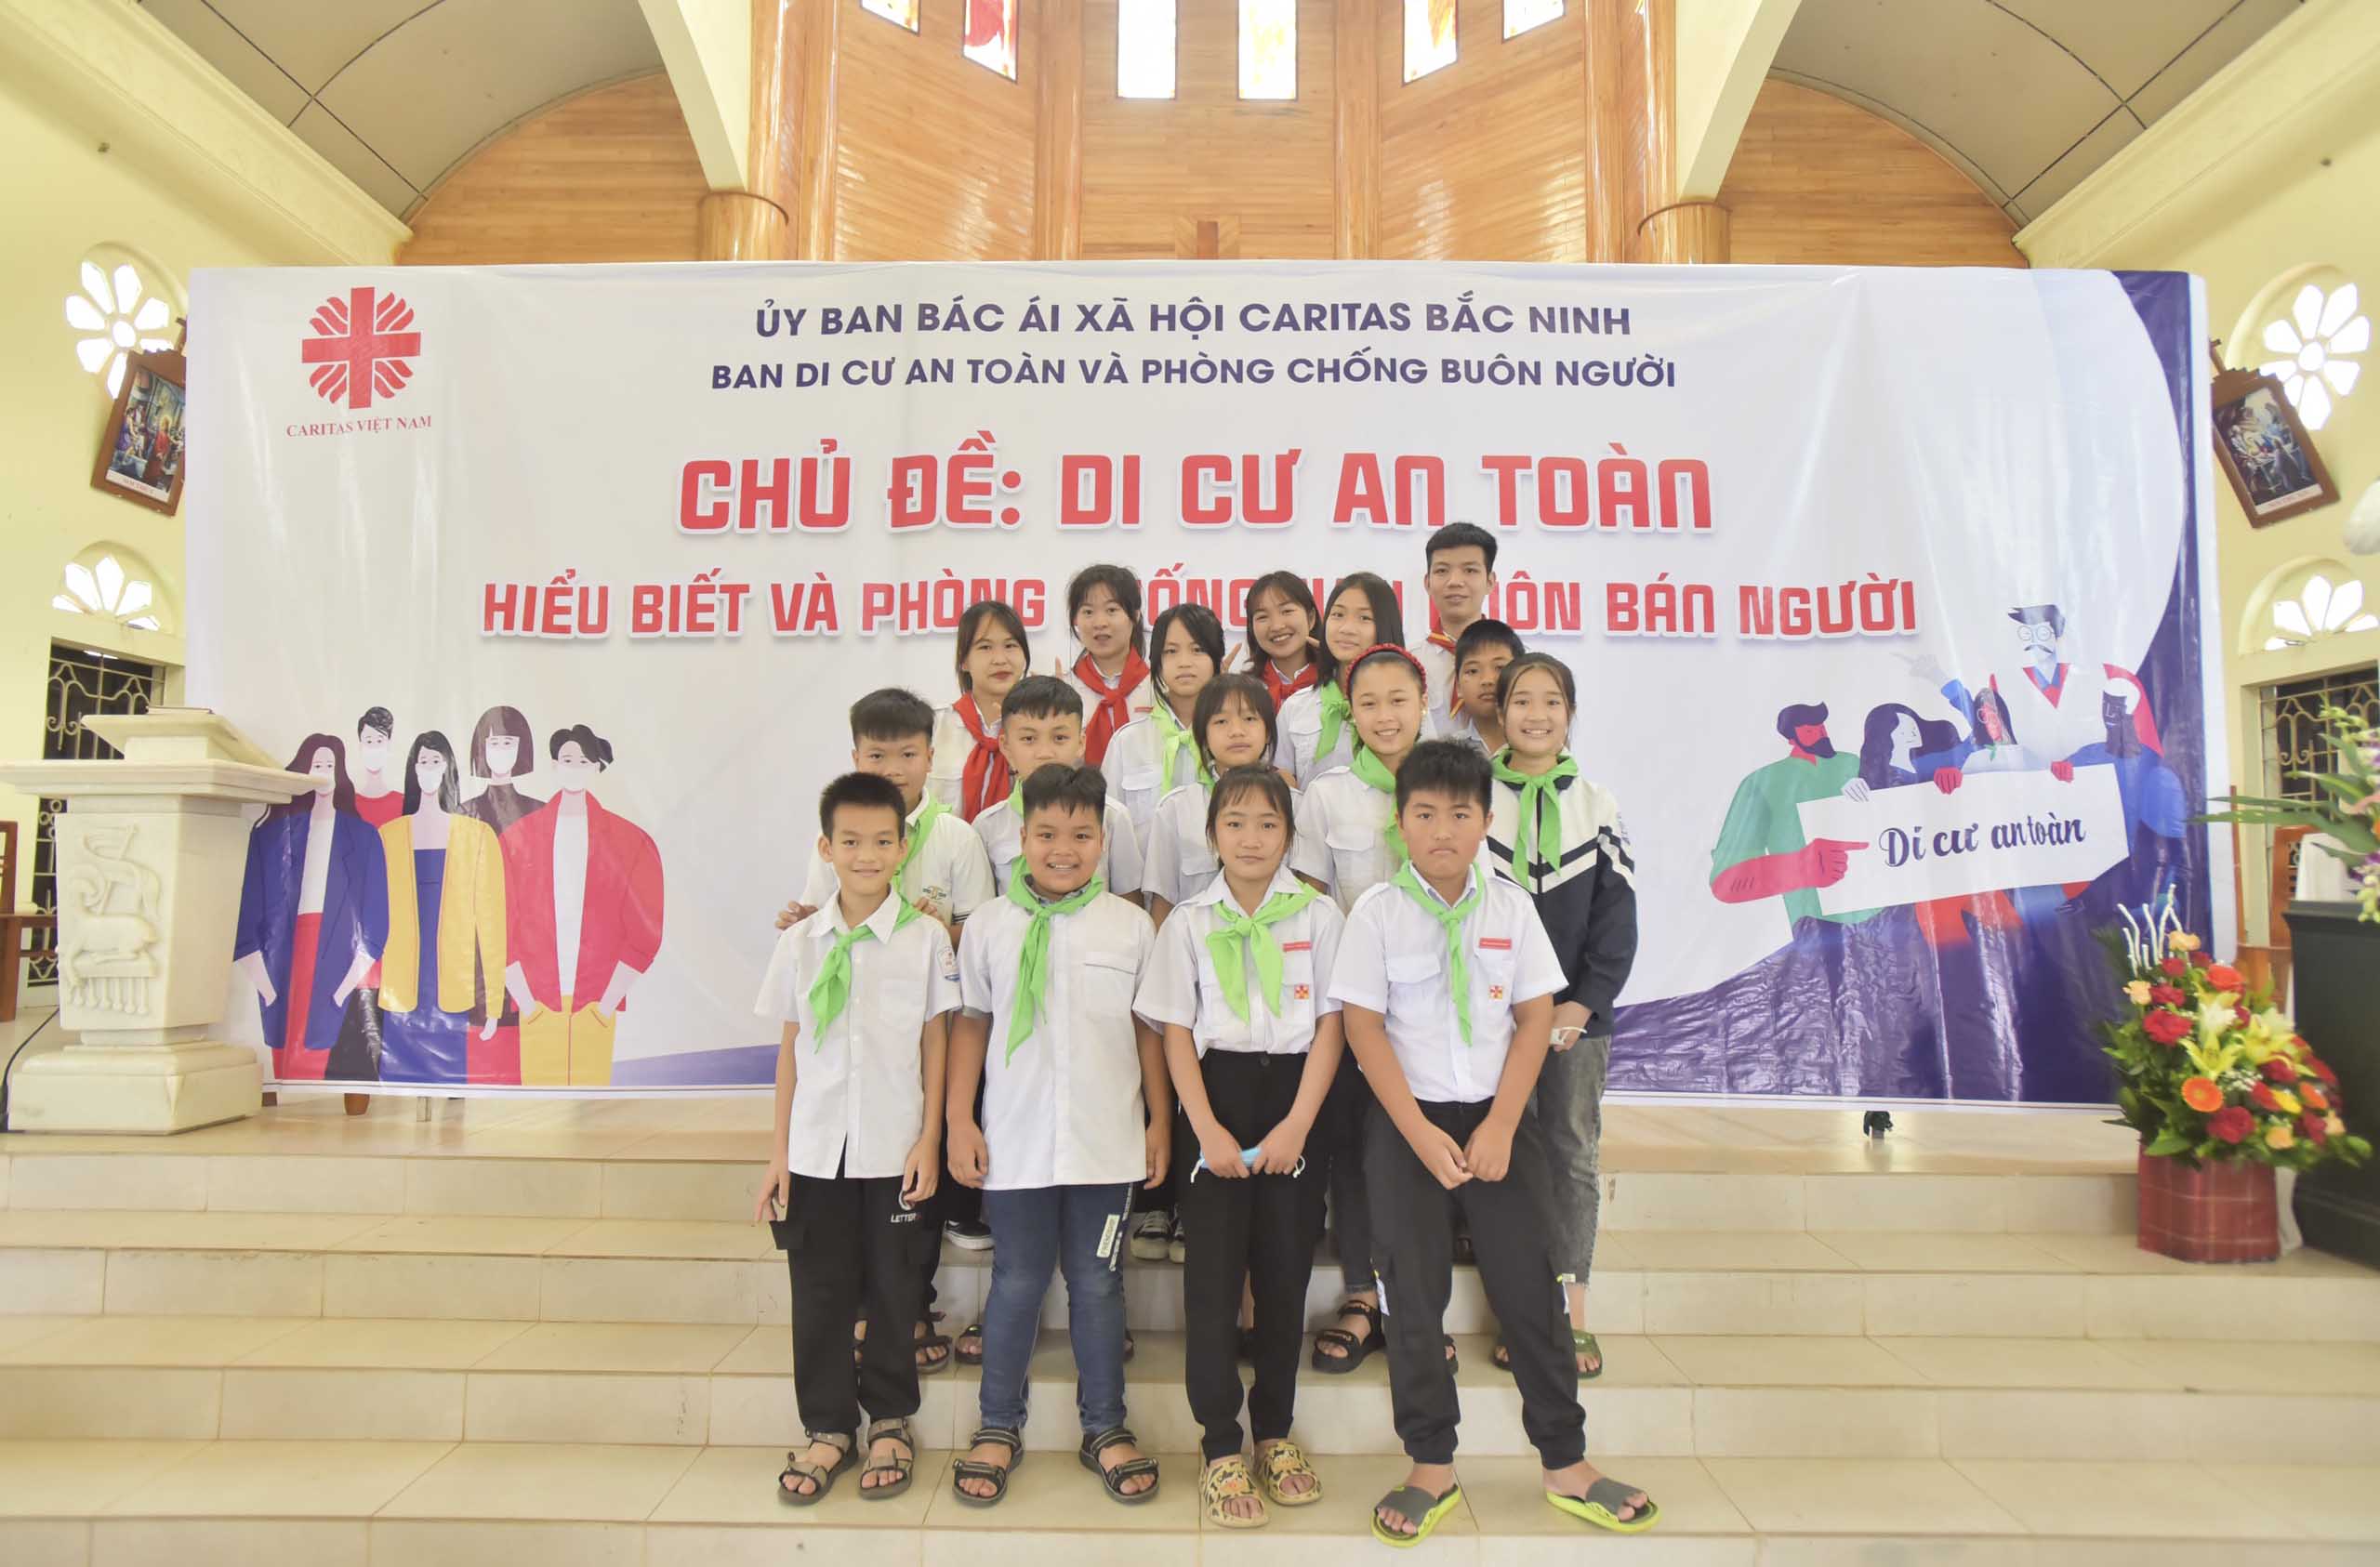 Caritas Bắc Ninh: Truyền thông Phòng chống buôn bán người